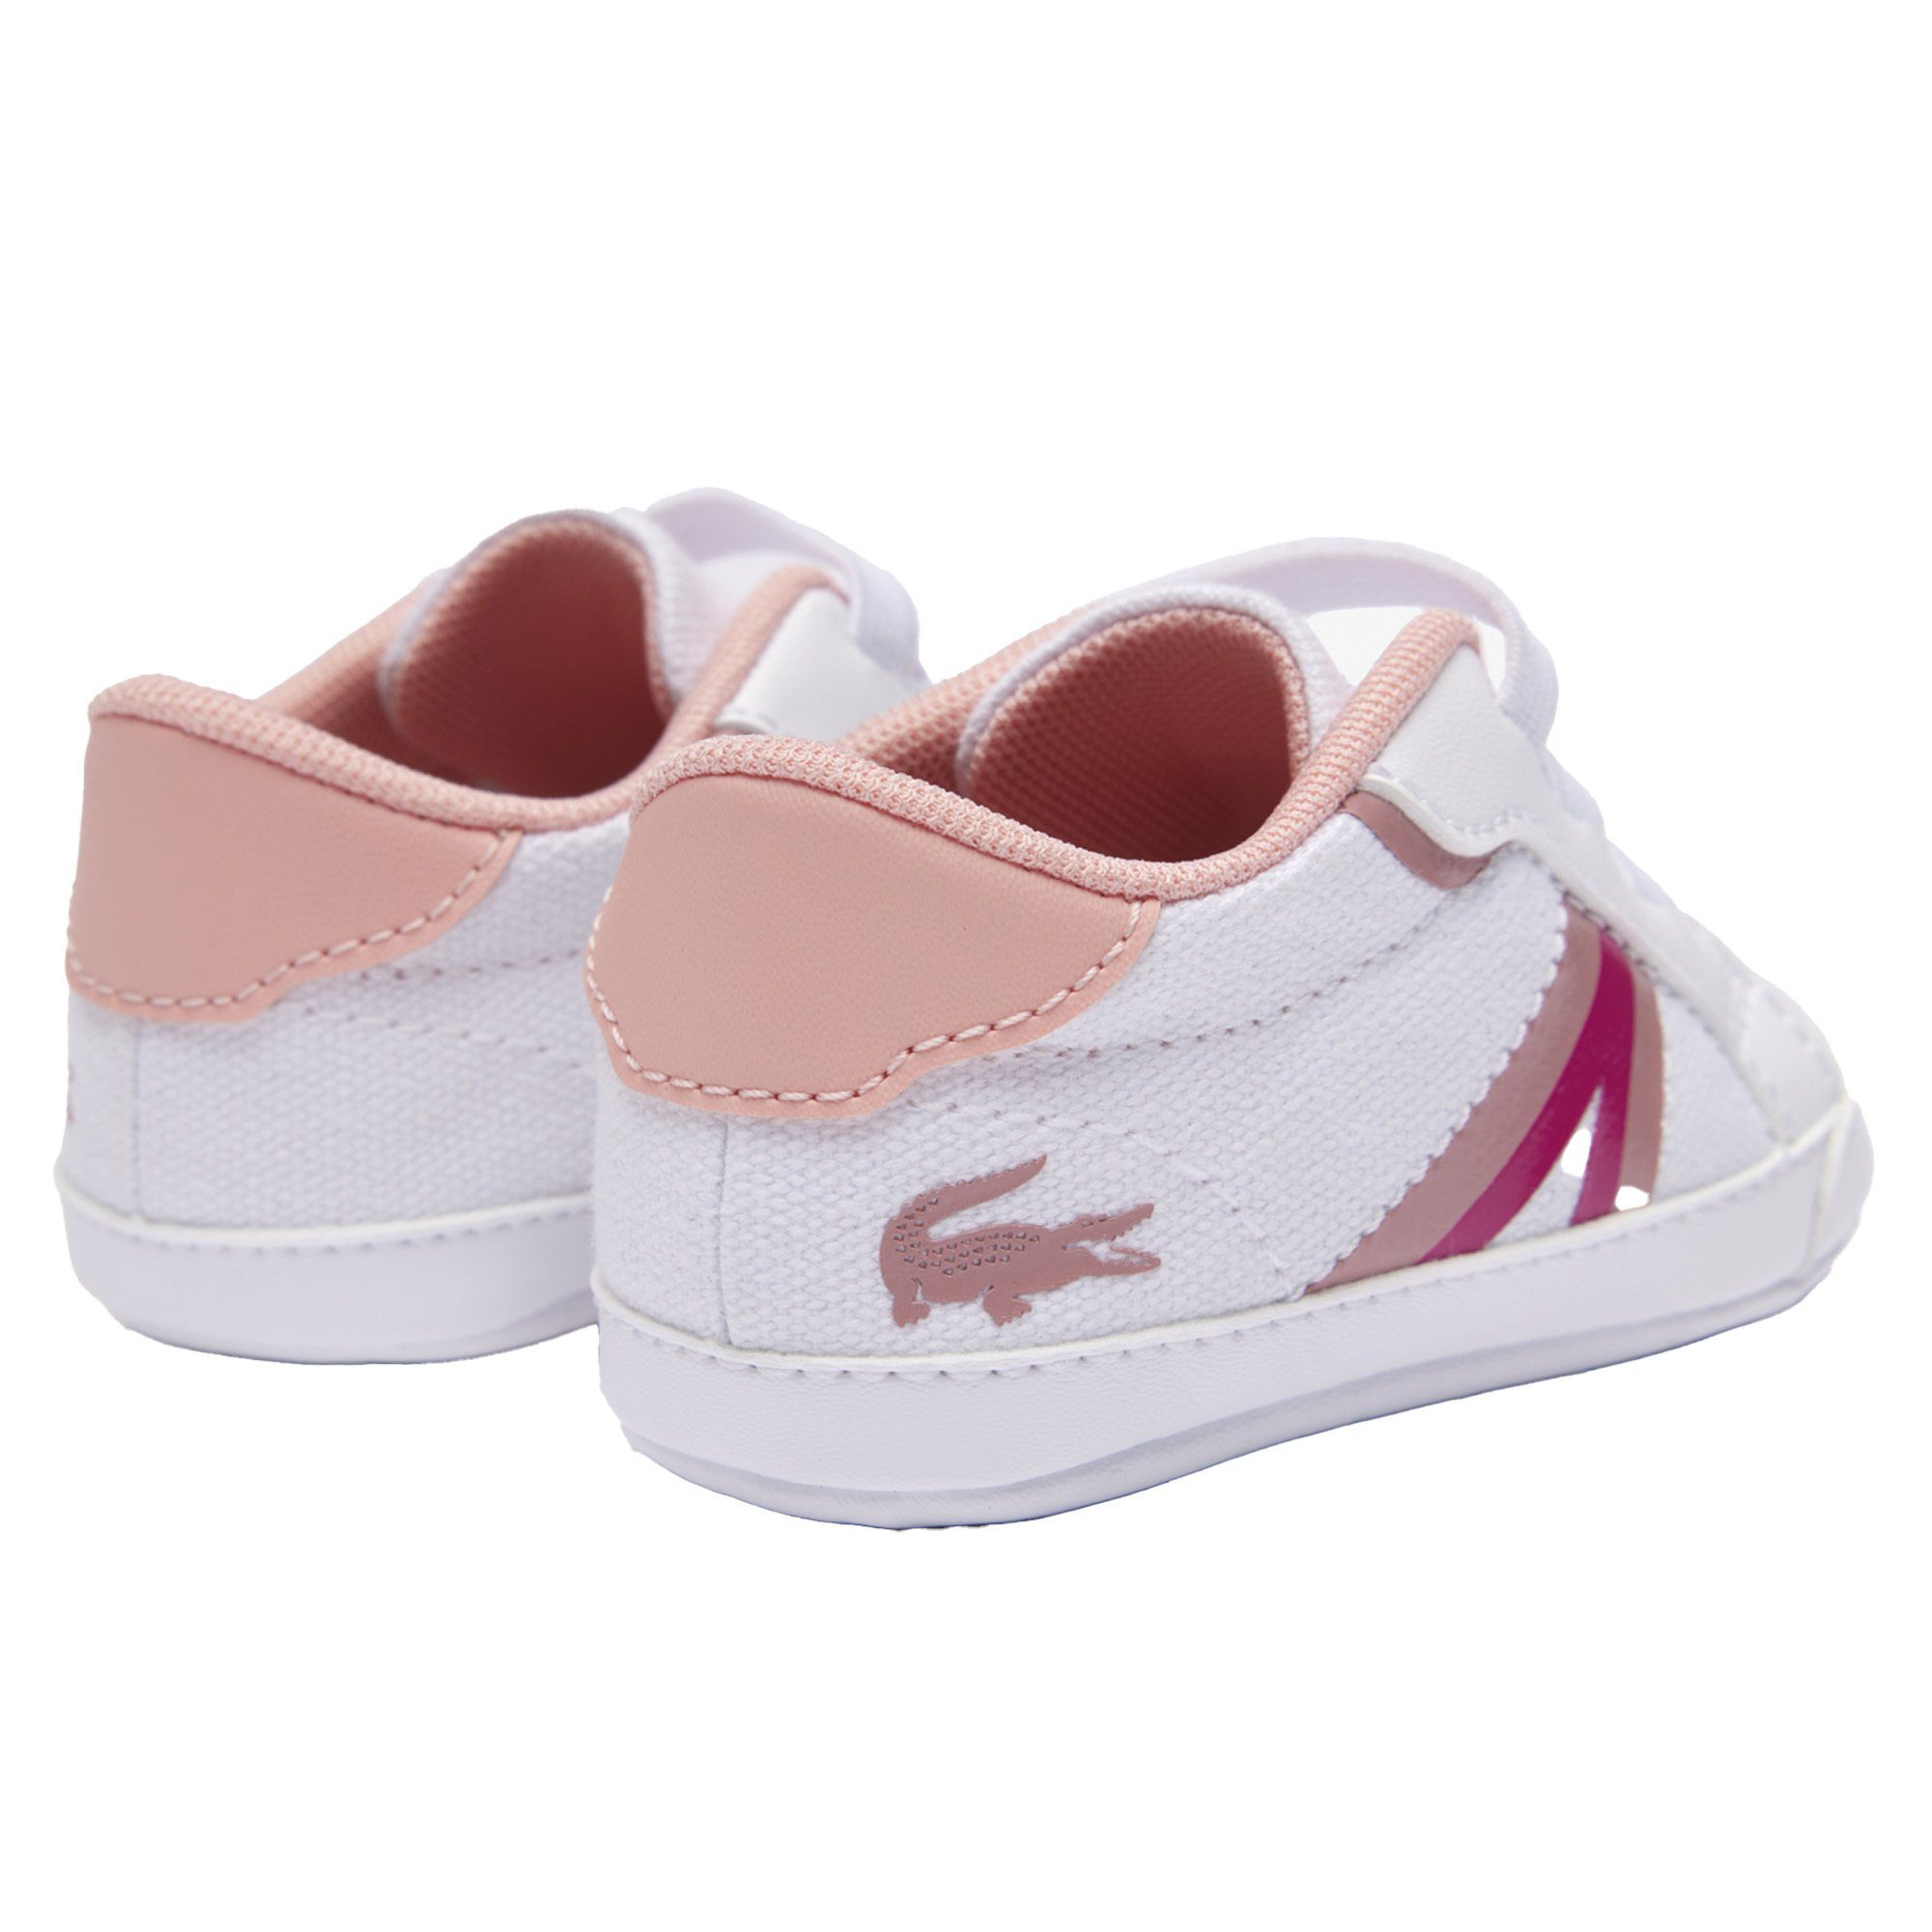 Lacoste Sneaker, L004 - Krabbelschuhe, Krabbelschuh Weiß/Pink Schuhe Cub, Baby